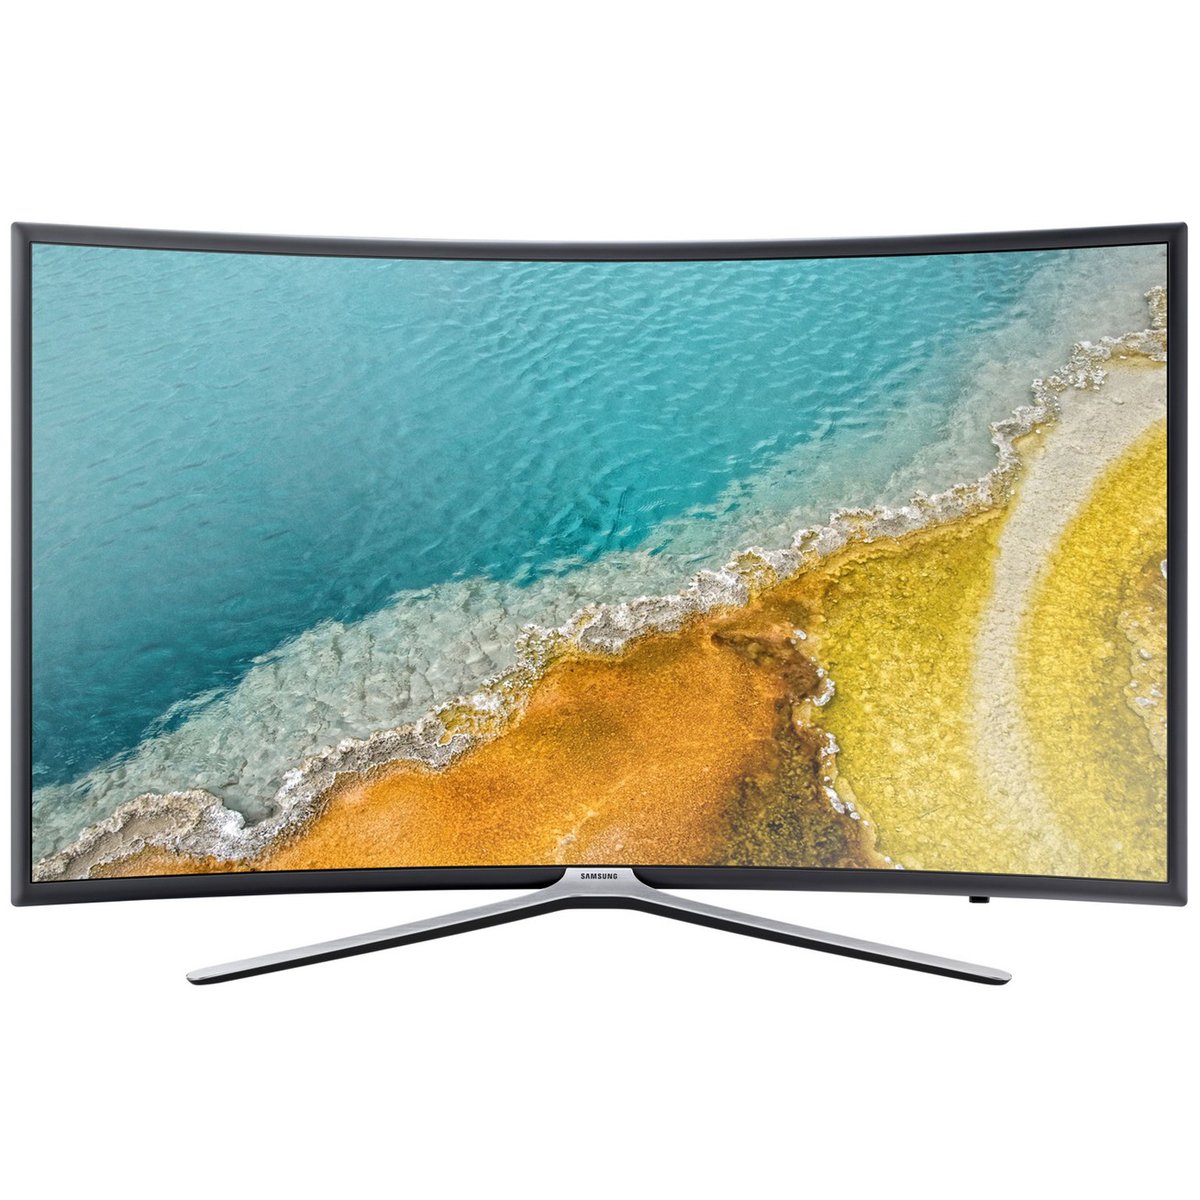 Samsung Full HD Smart LED TV UA49K6500 49inch